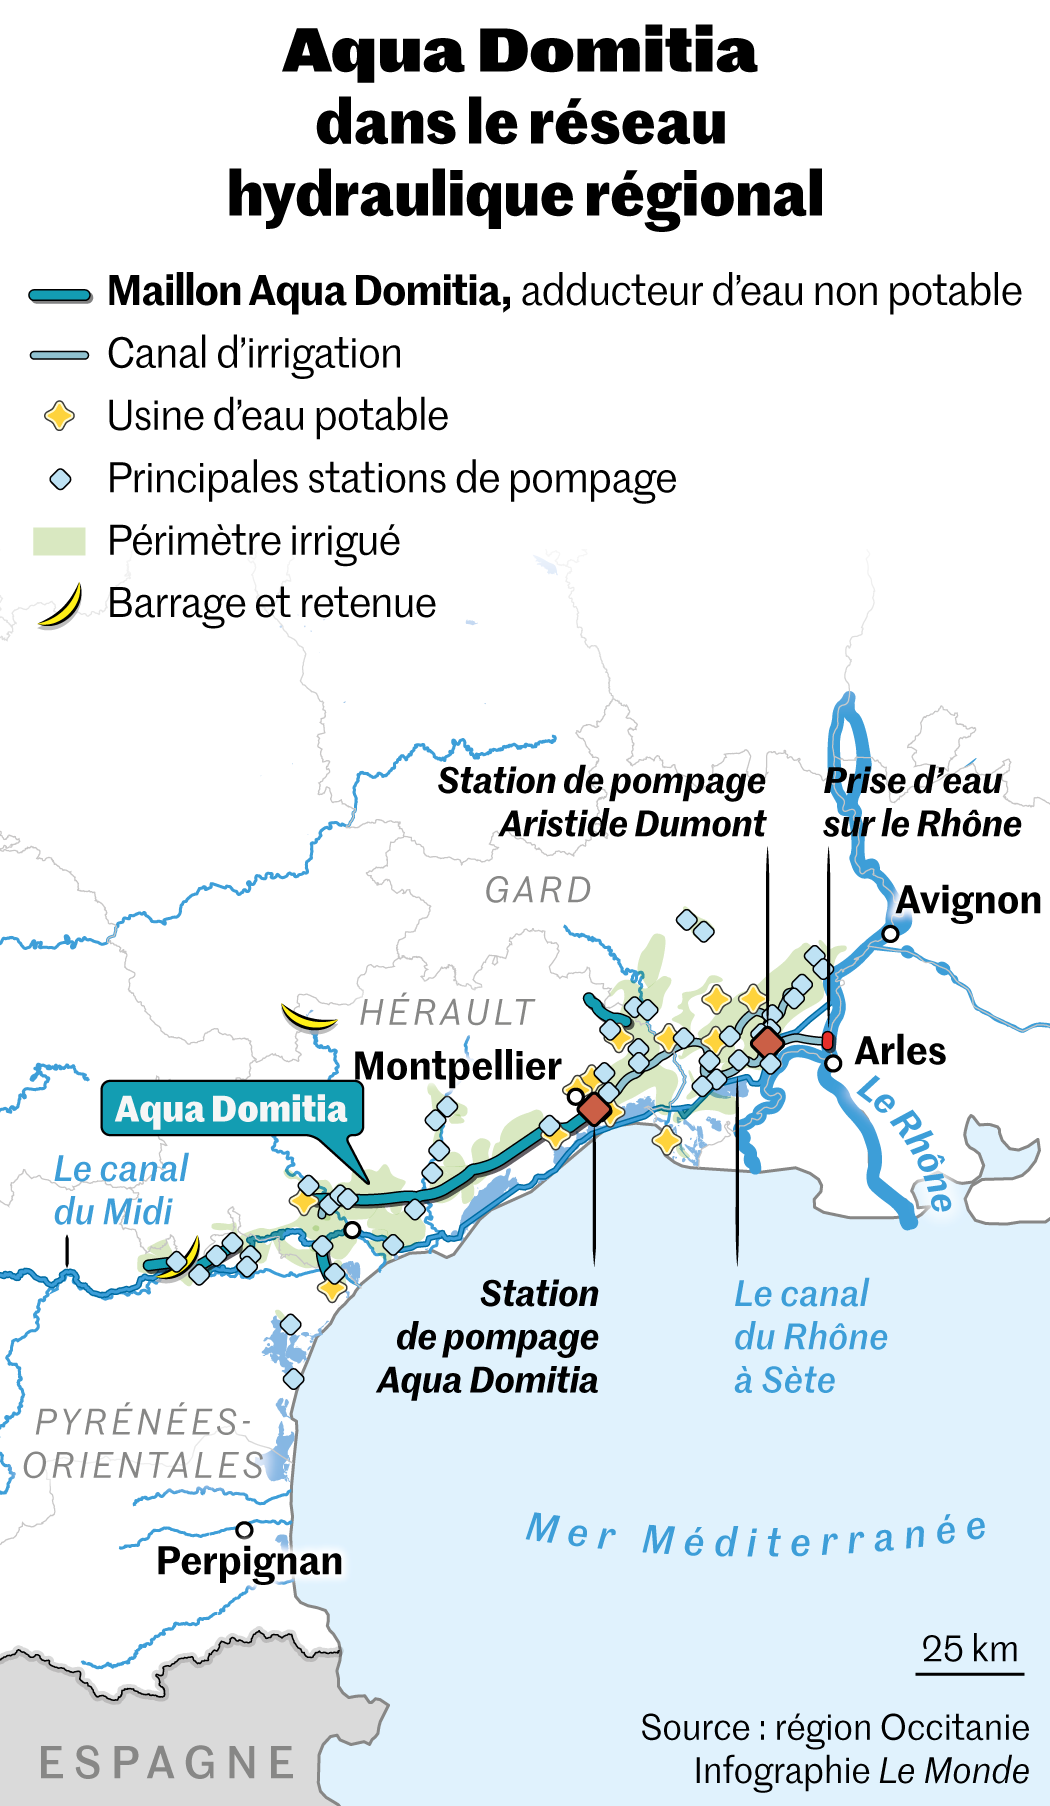 Les délires technicistes : Acheminer l’eau du Rhône jusqu’aux Pyrénées-Orientales… l’Aqua Domitia…